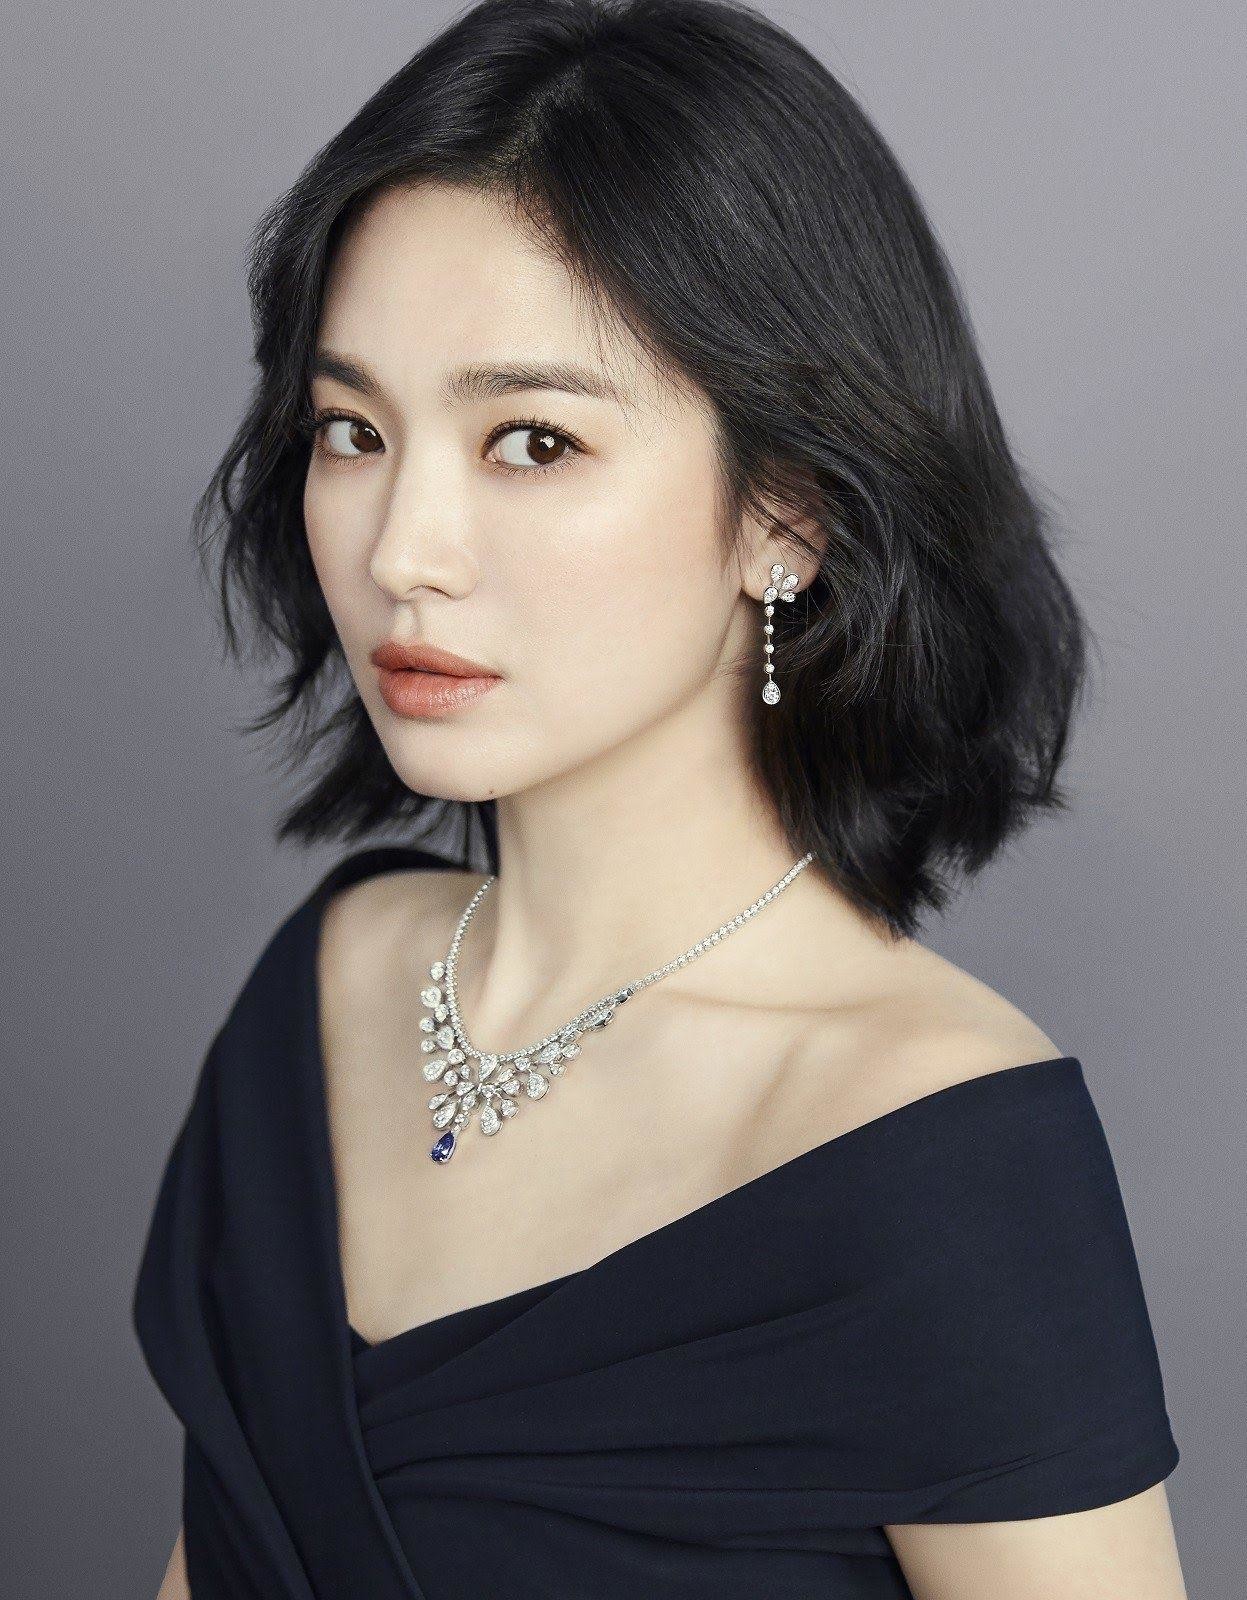 Южнокорейские актрисы: как выглядят кумиры молодёжи Востока